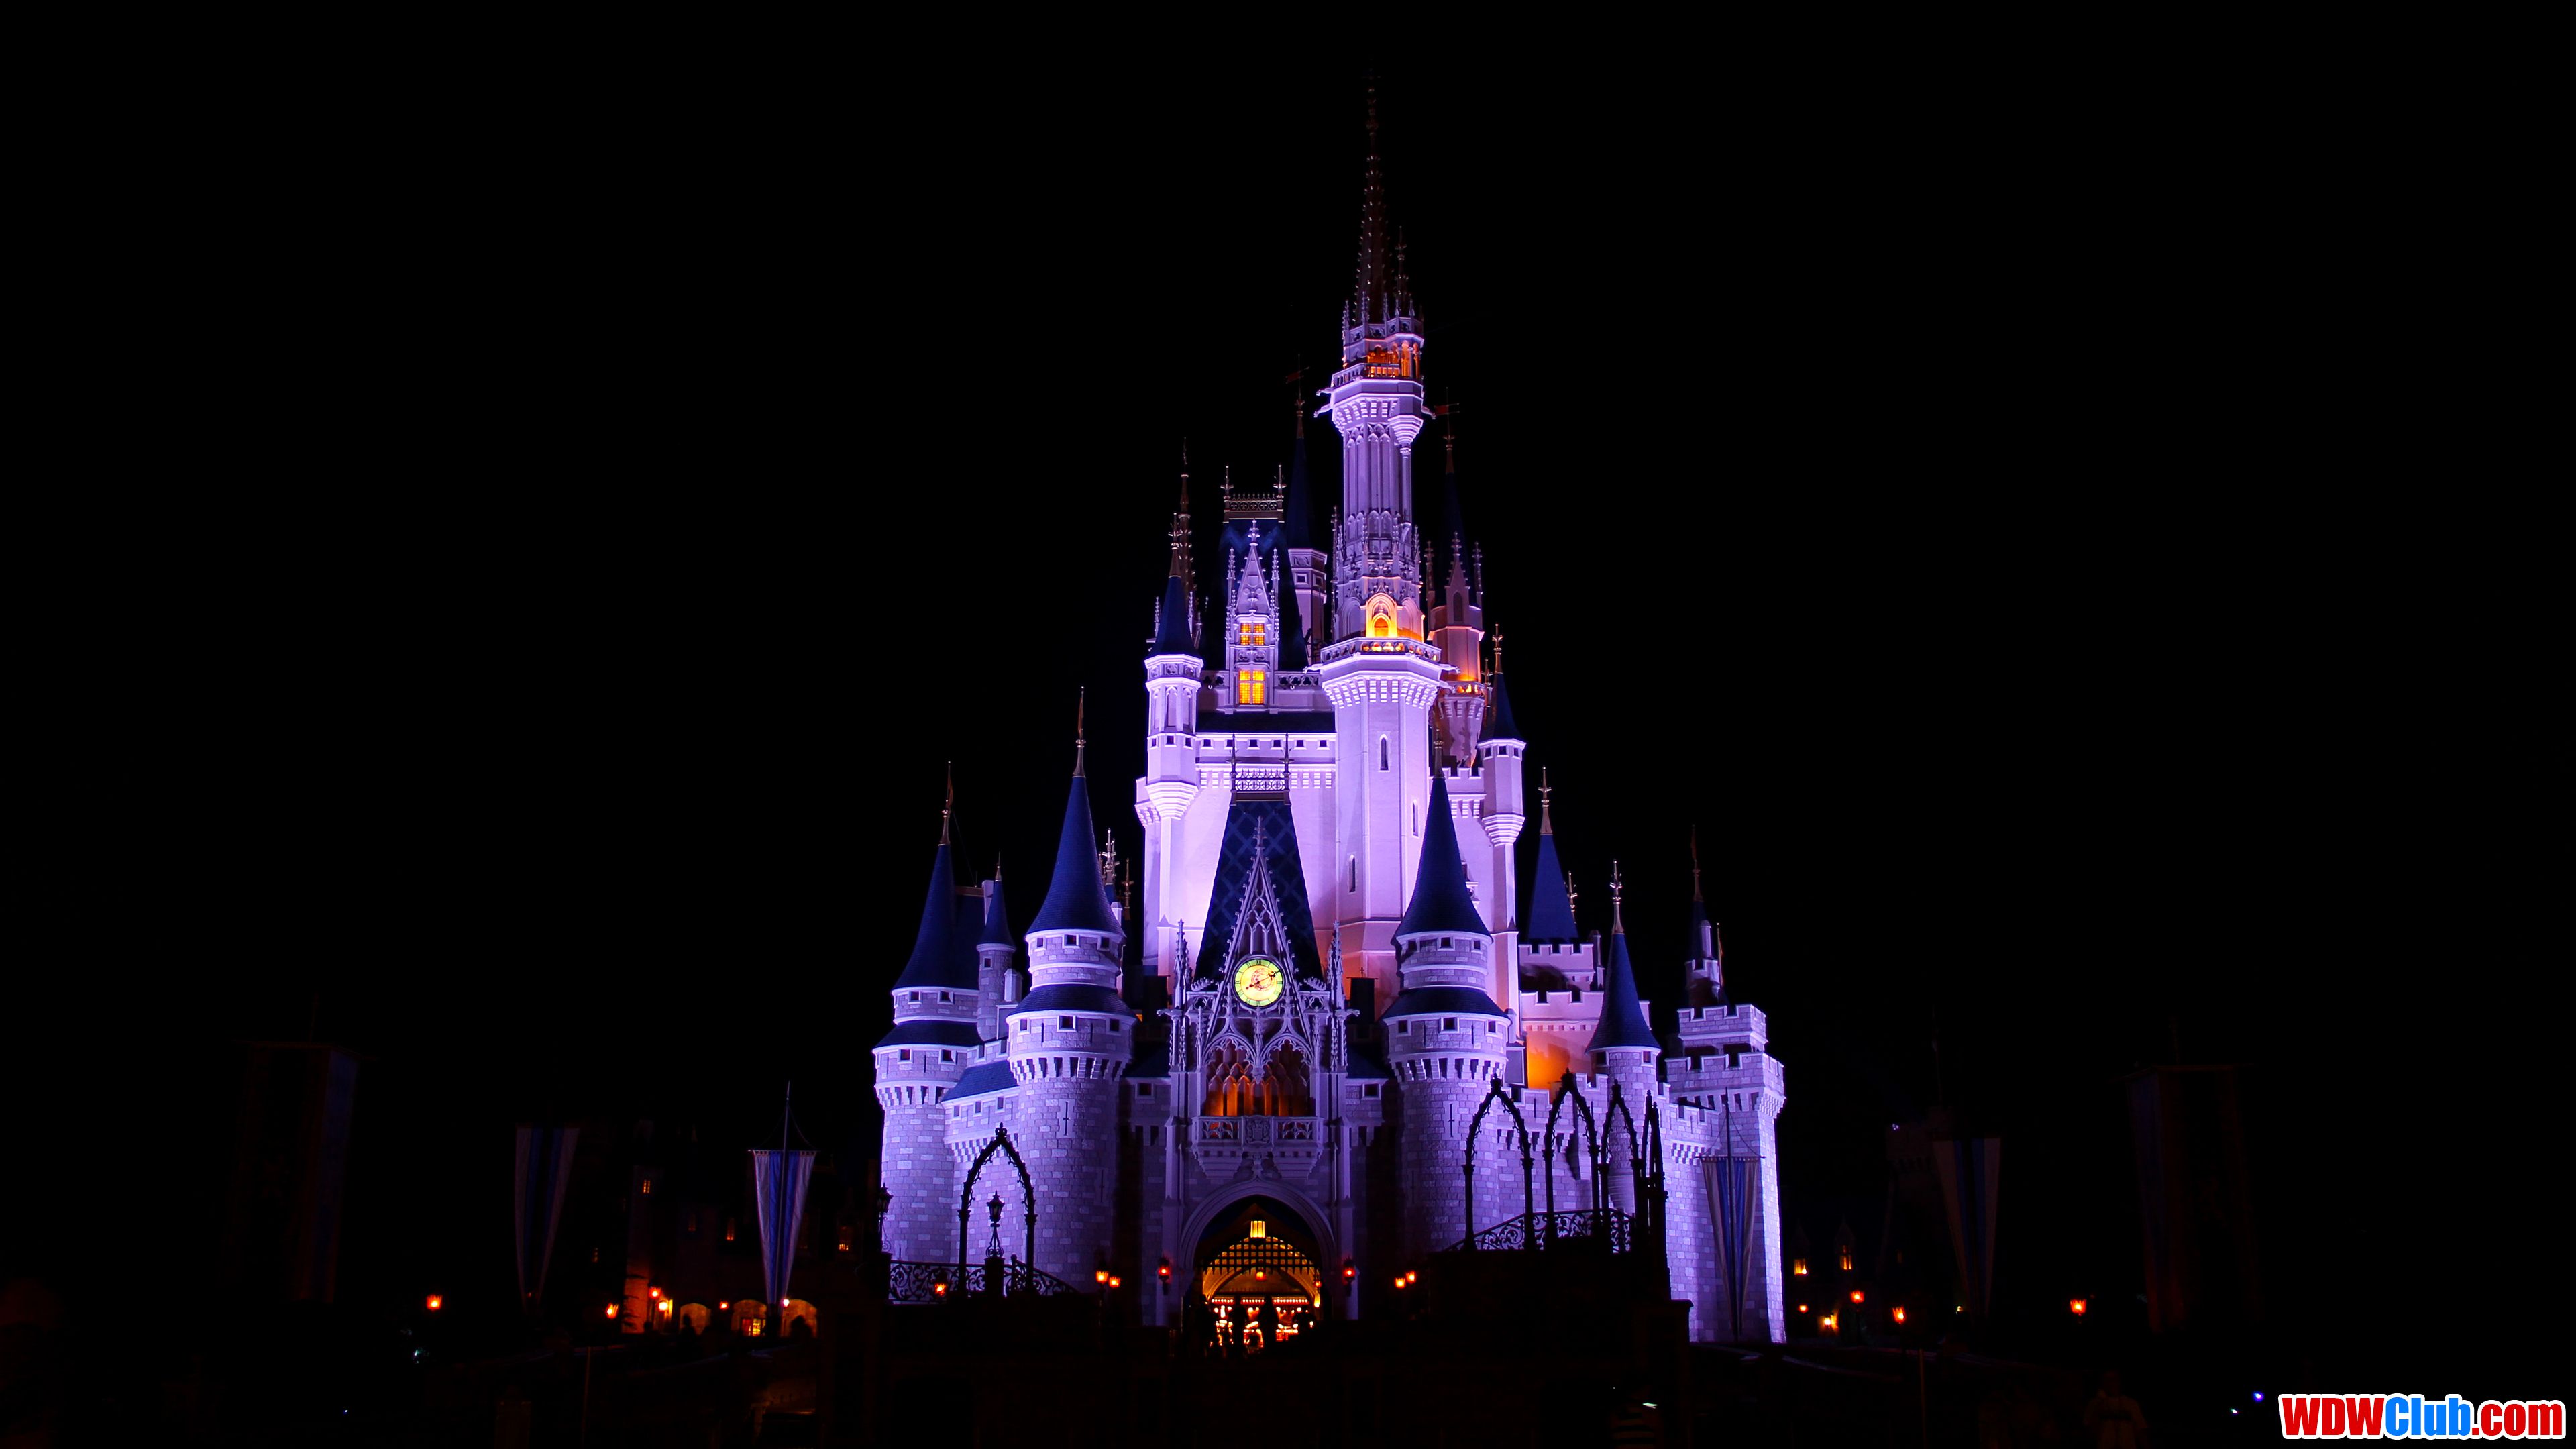 Cinderella Castle at Night 4K Wallpaper